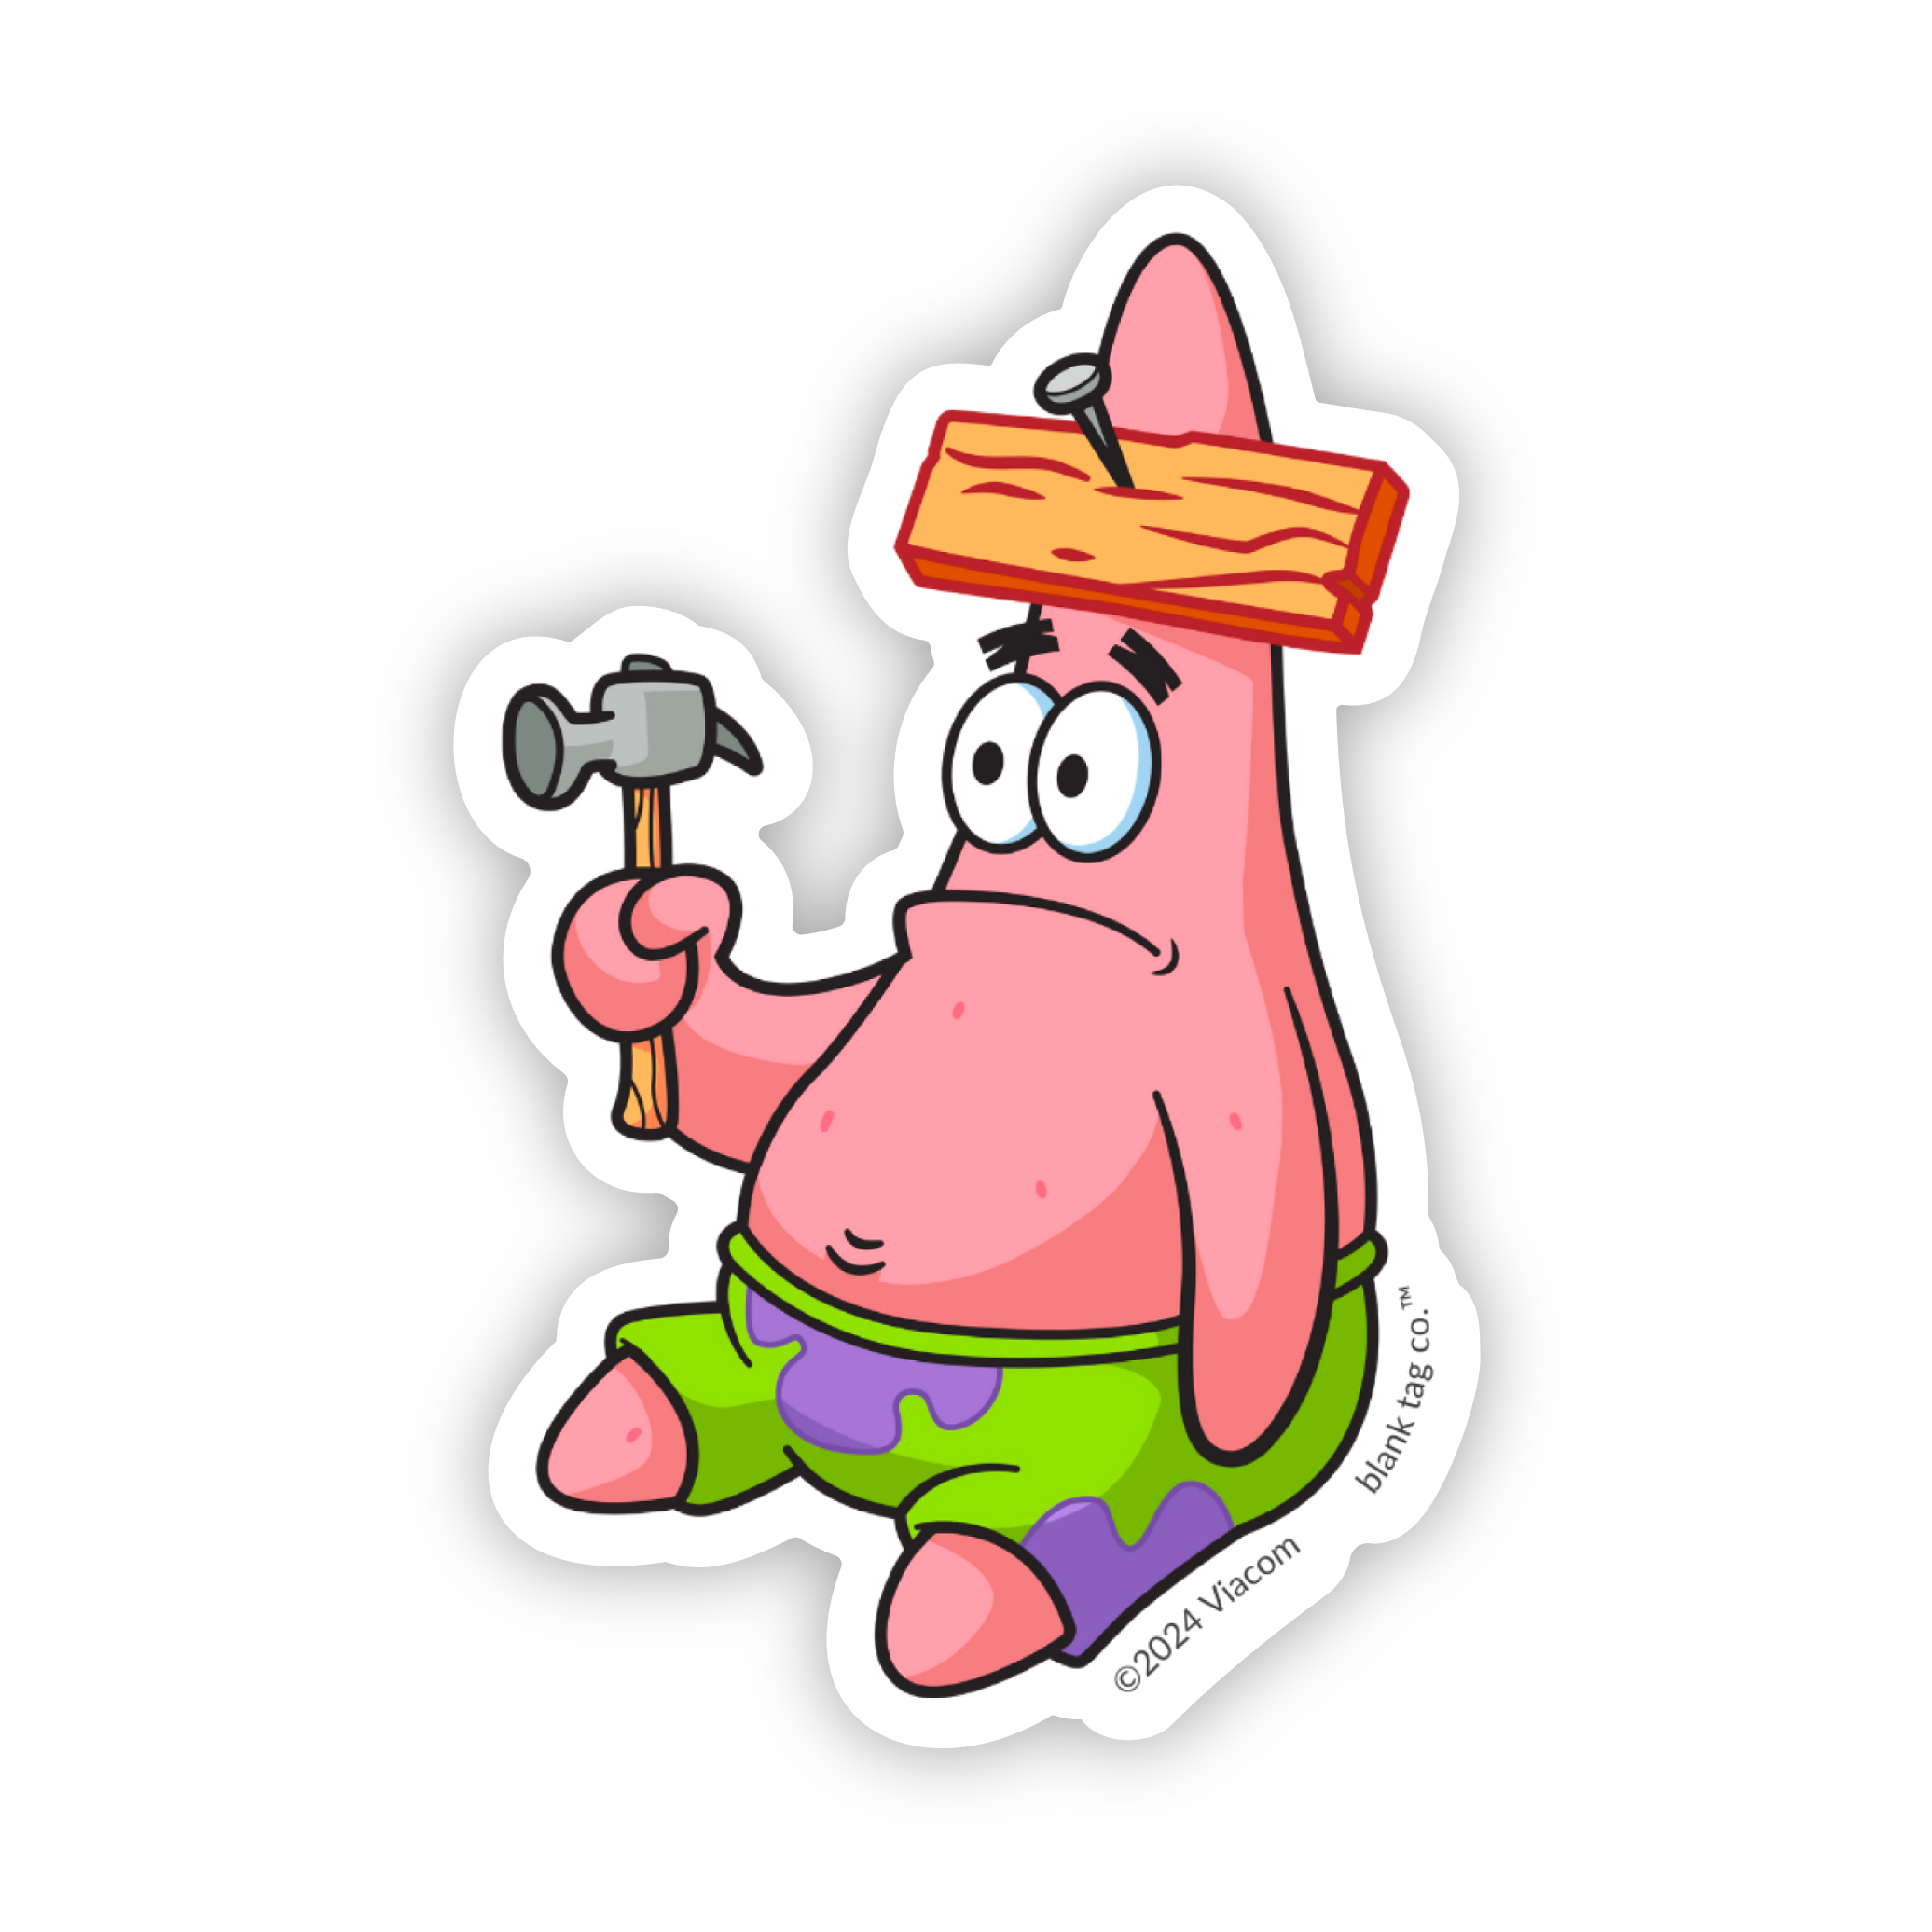 The I Have No Idea Patrick Meme Sticker